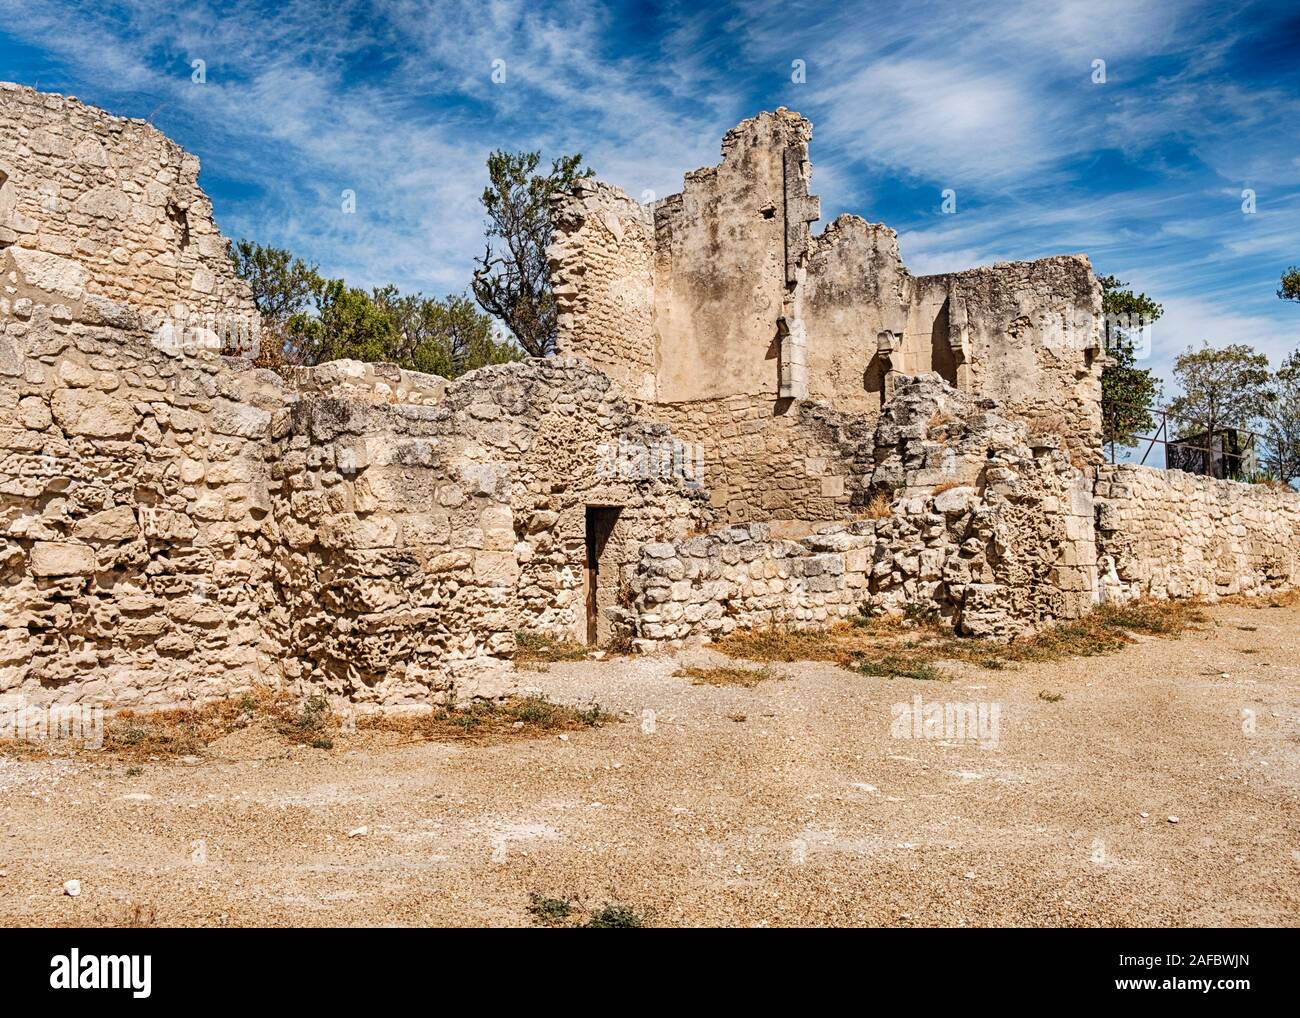 Les murs de pierre en ruine entourent les ruines de l'ancienne forteresse de Baux-de-Provence en France. Banque D'Images